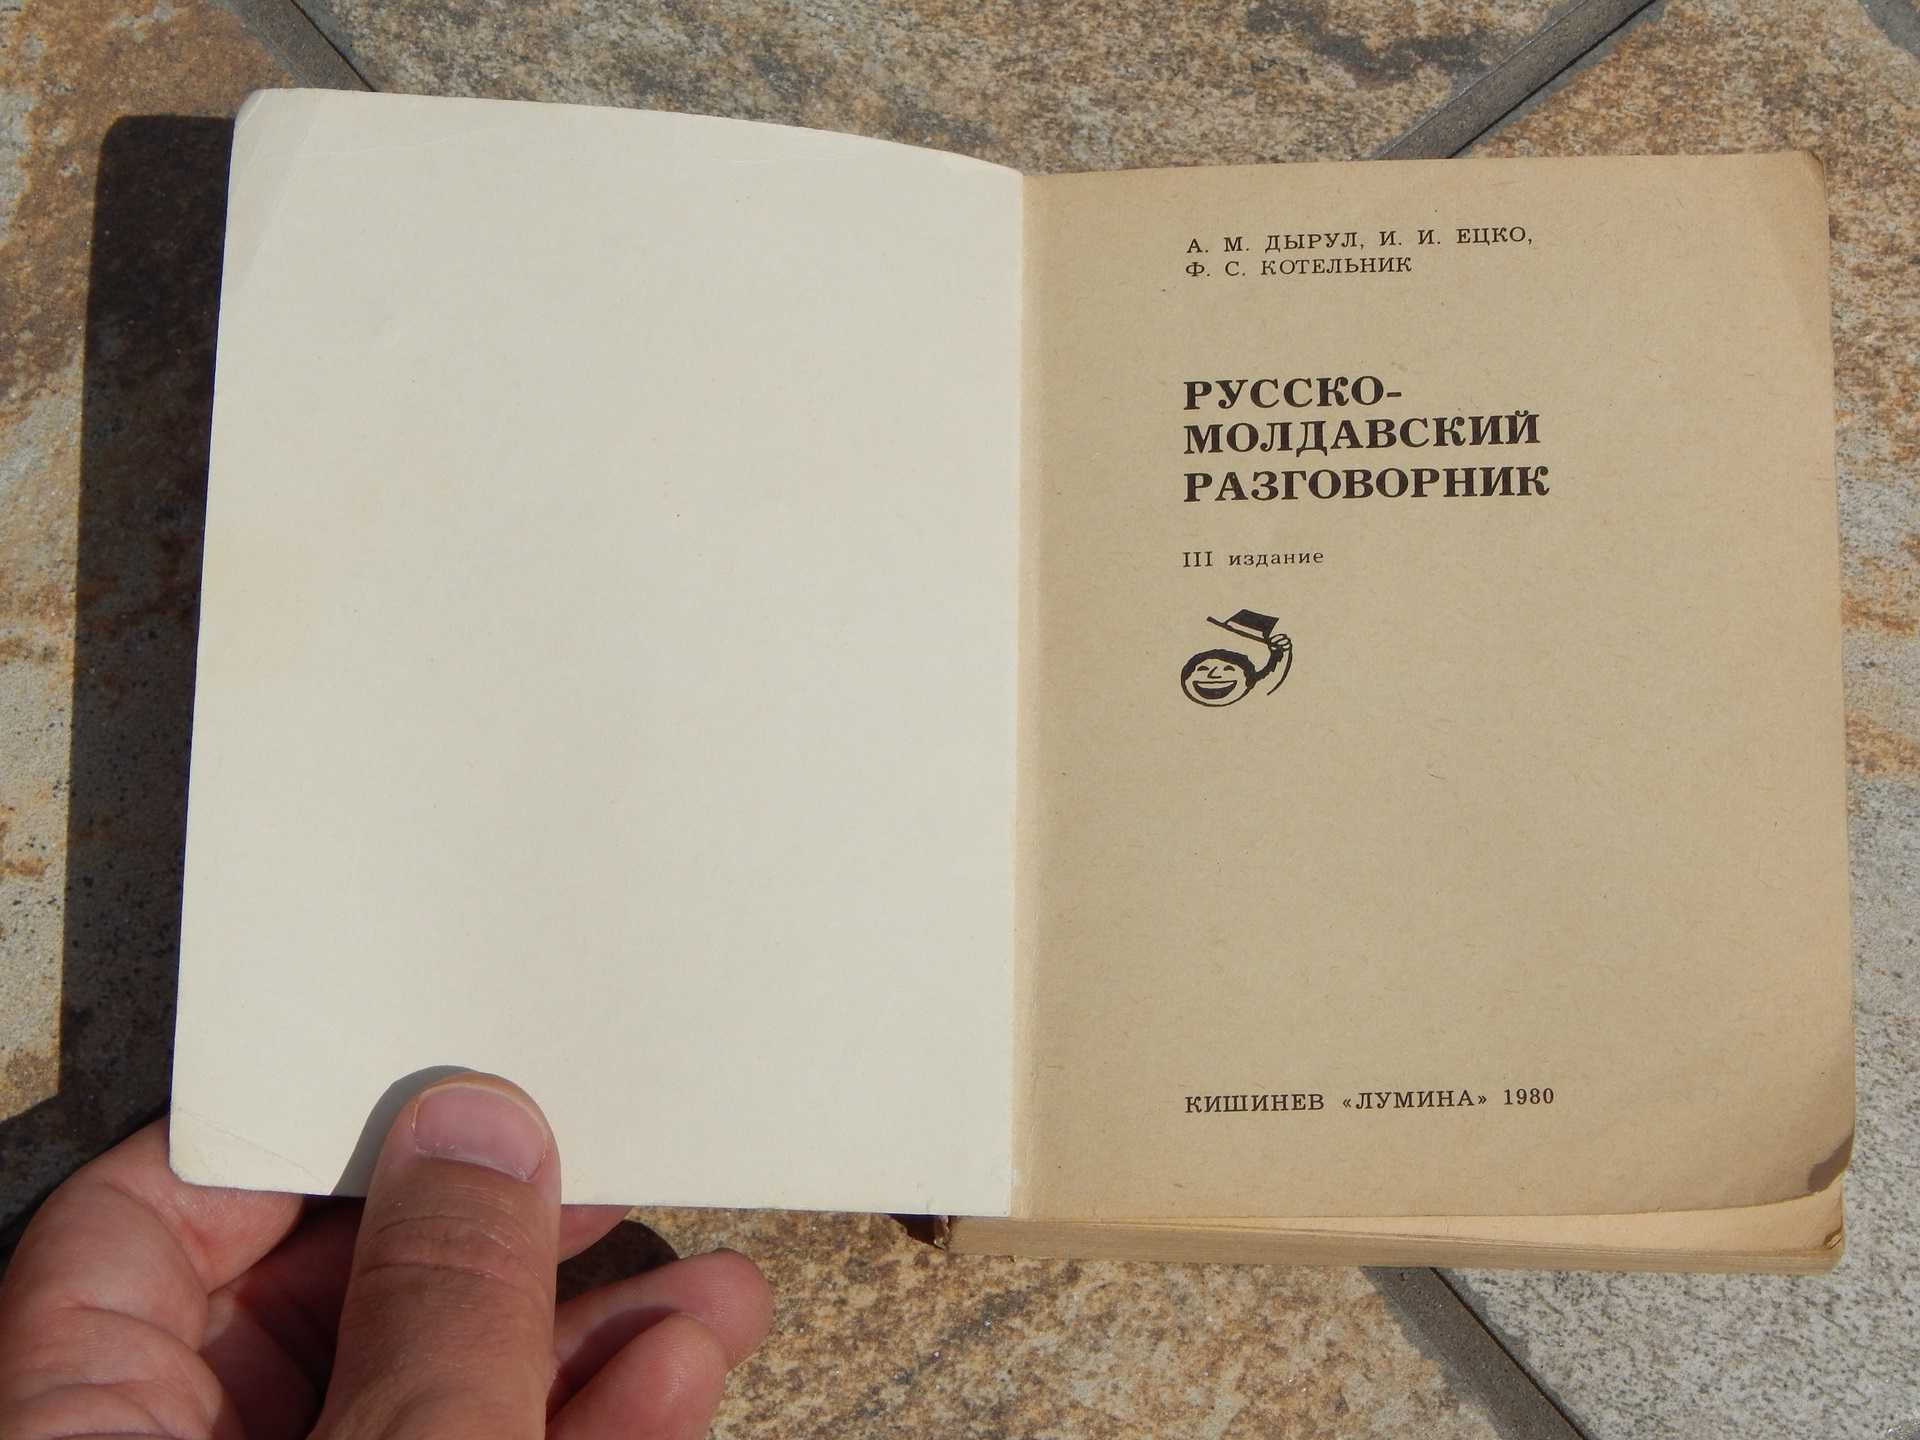 Dictionar de expresii uzuale rus - moldovenesc ed Lumina Chisinau 1980